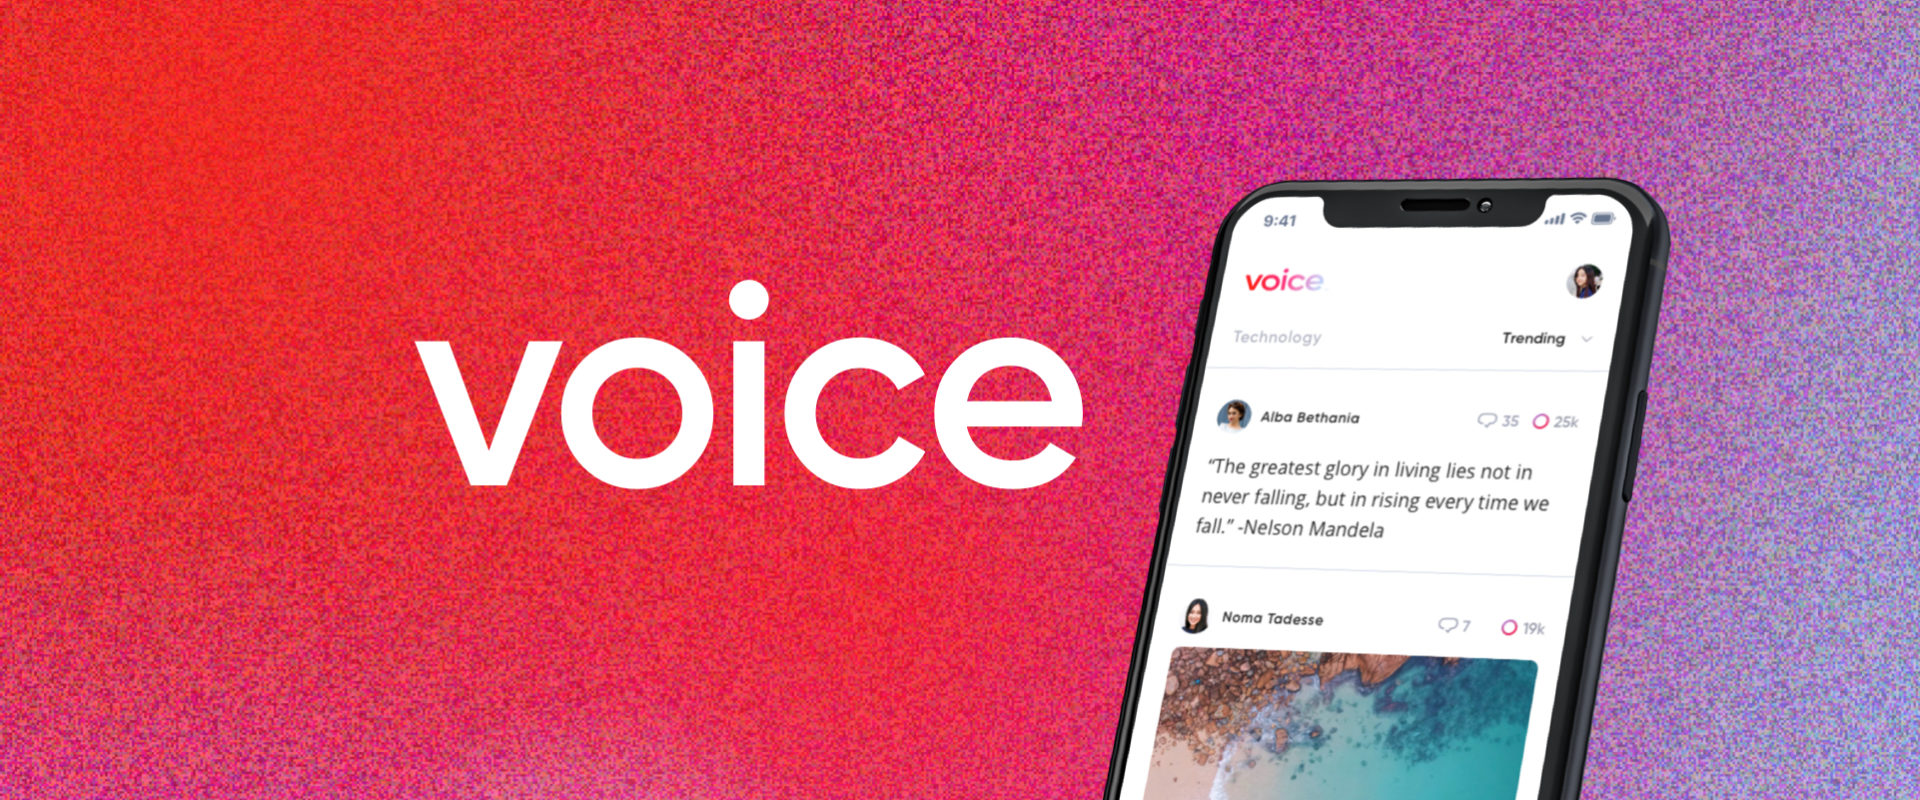 voice_blog_post-banner